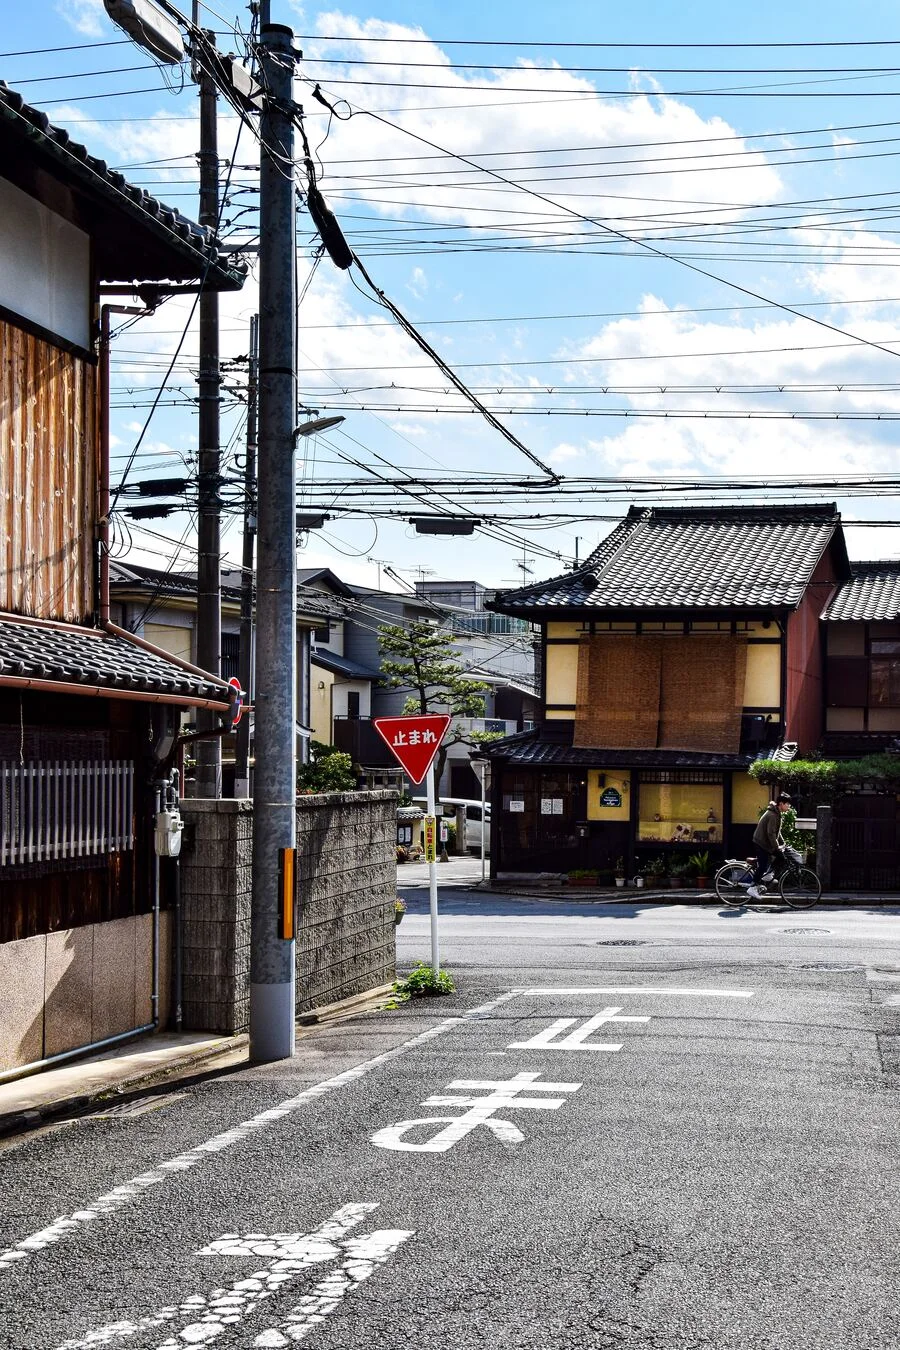 京都街道圖,路口有停止標誌符號
